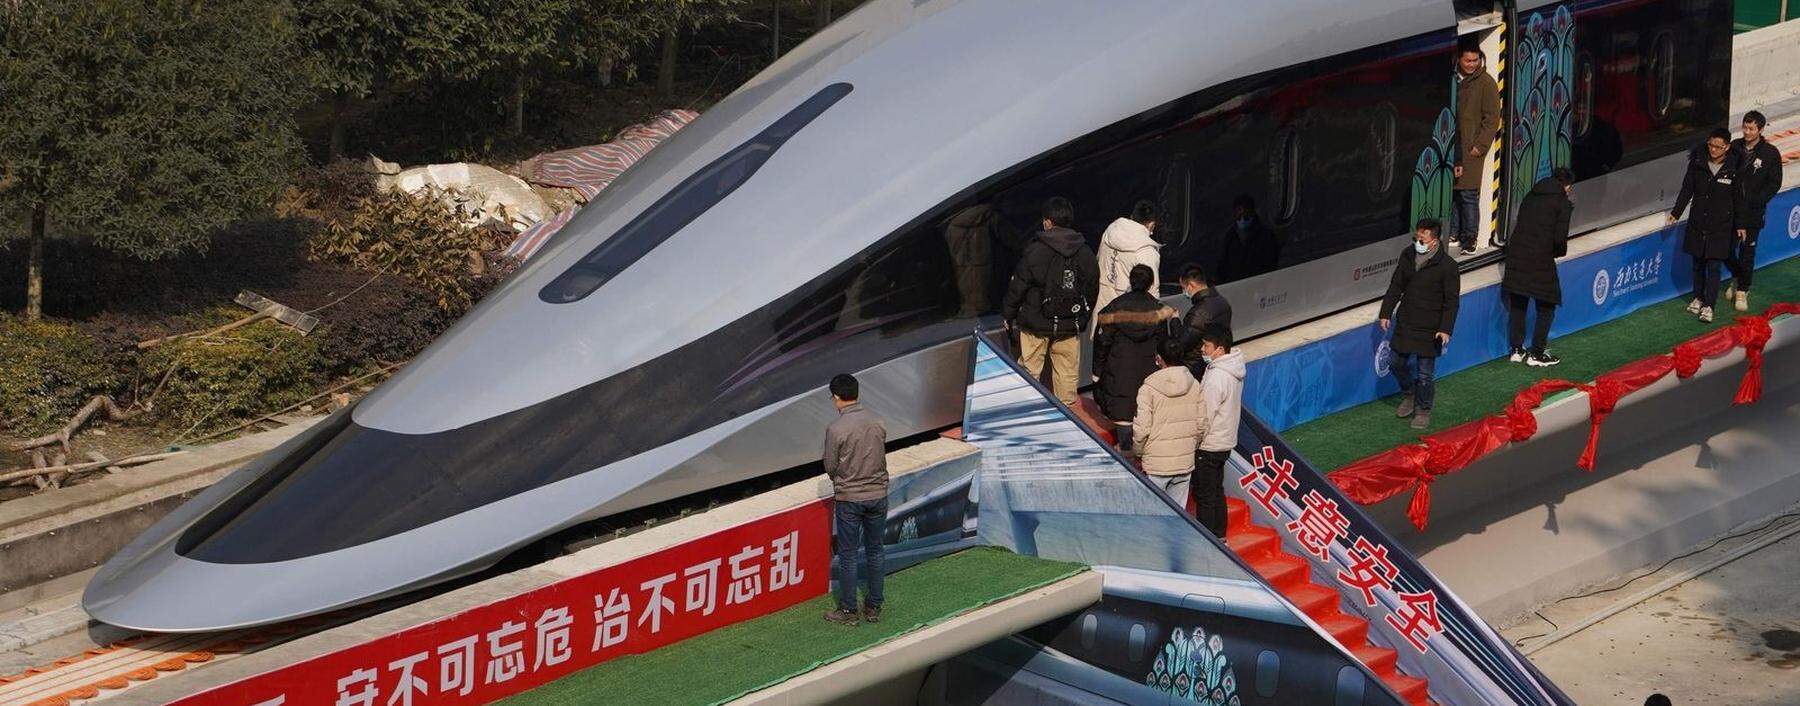 Die Konkurrenz kommt aus China: Ein Prototyp wurde bereits in Chengdu feierlich präsentiert. 